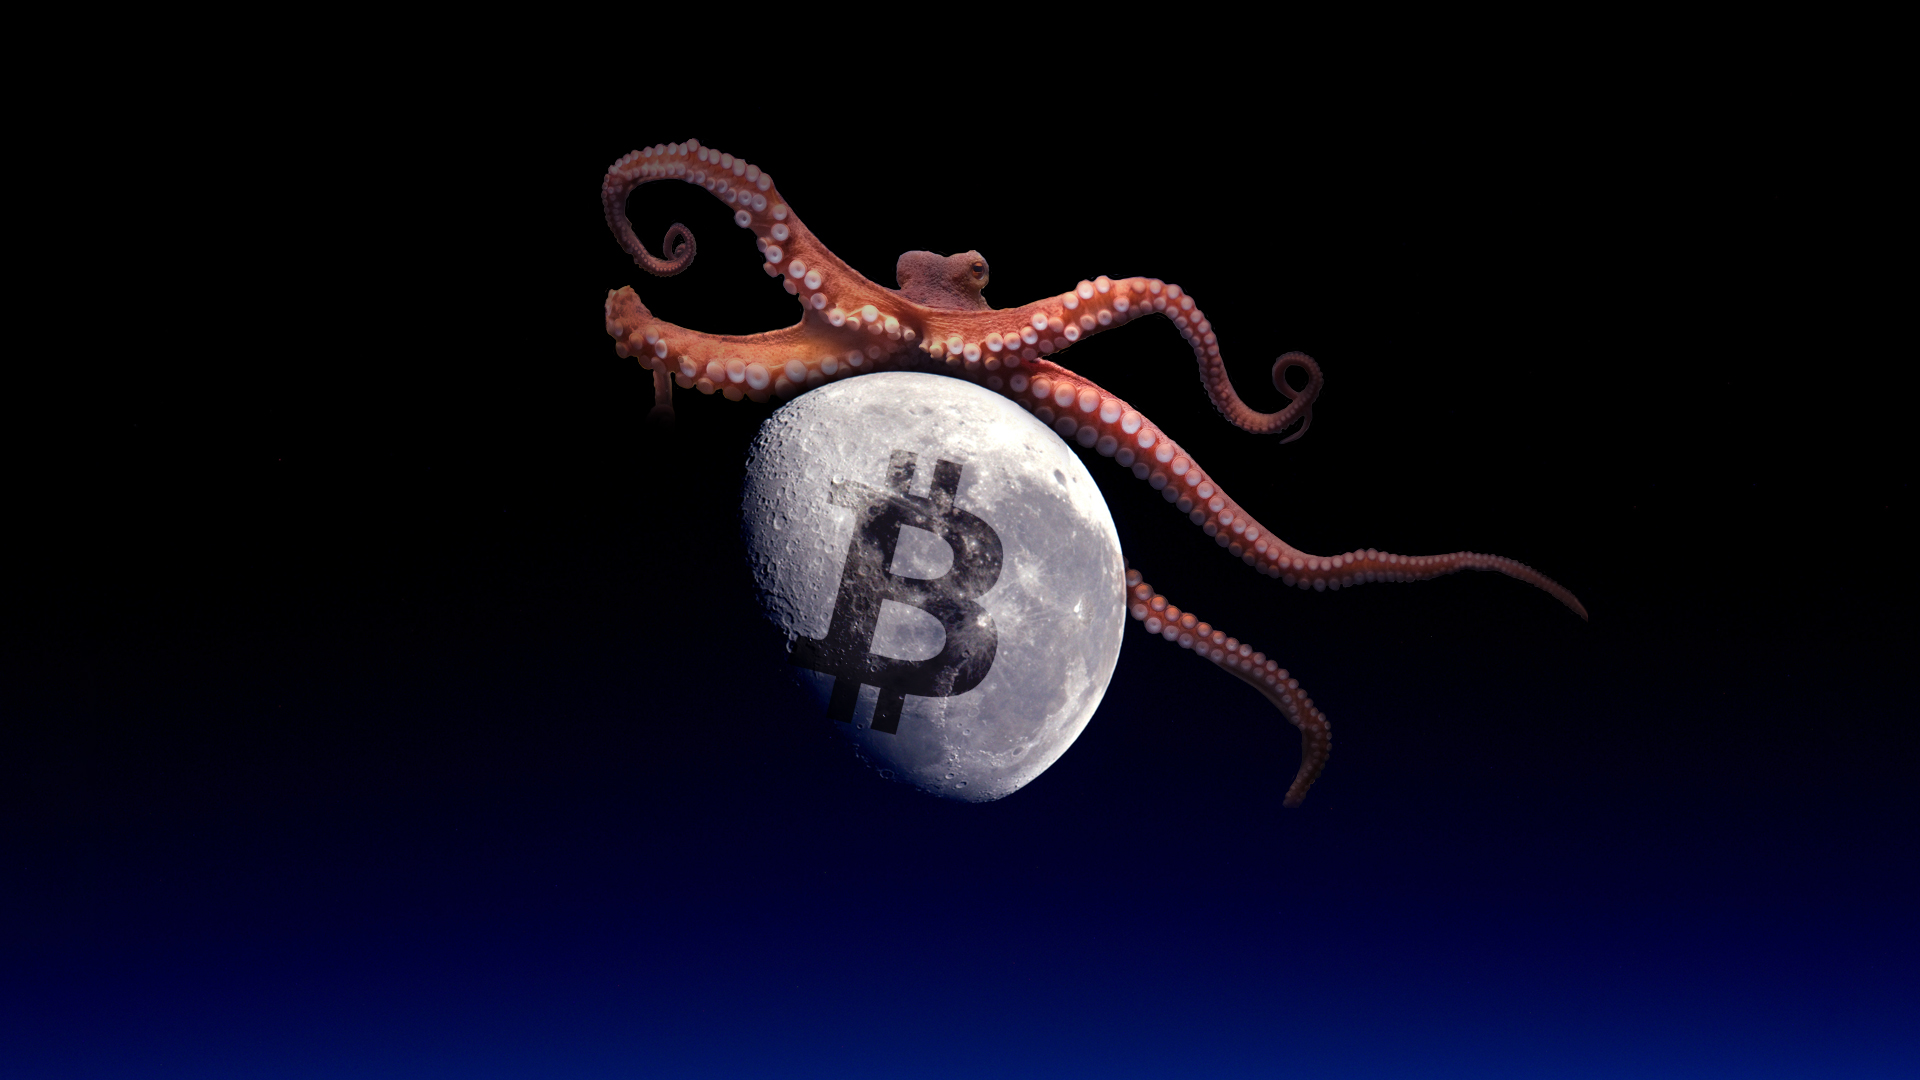 octopus crypto coin